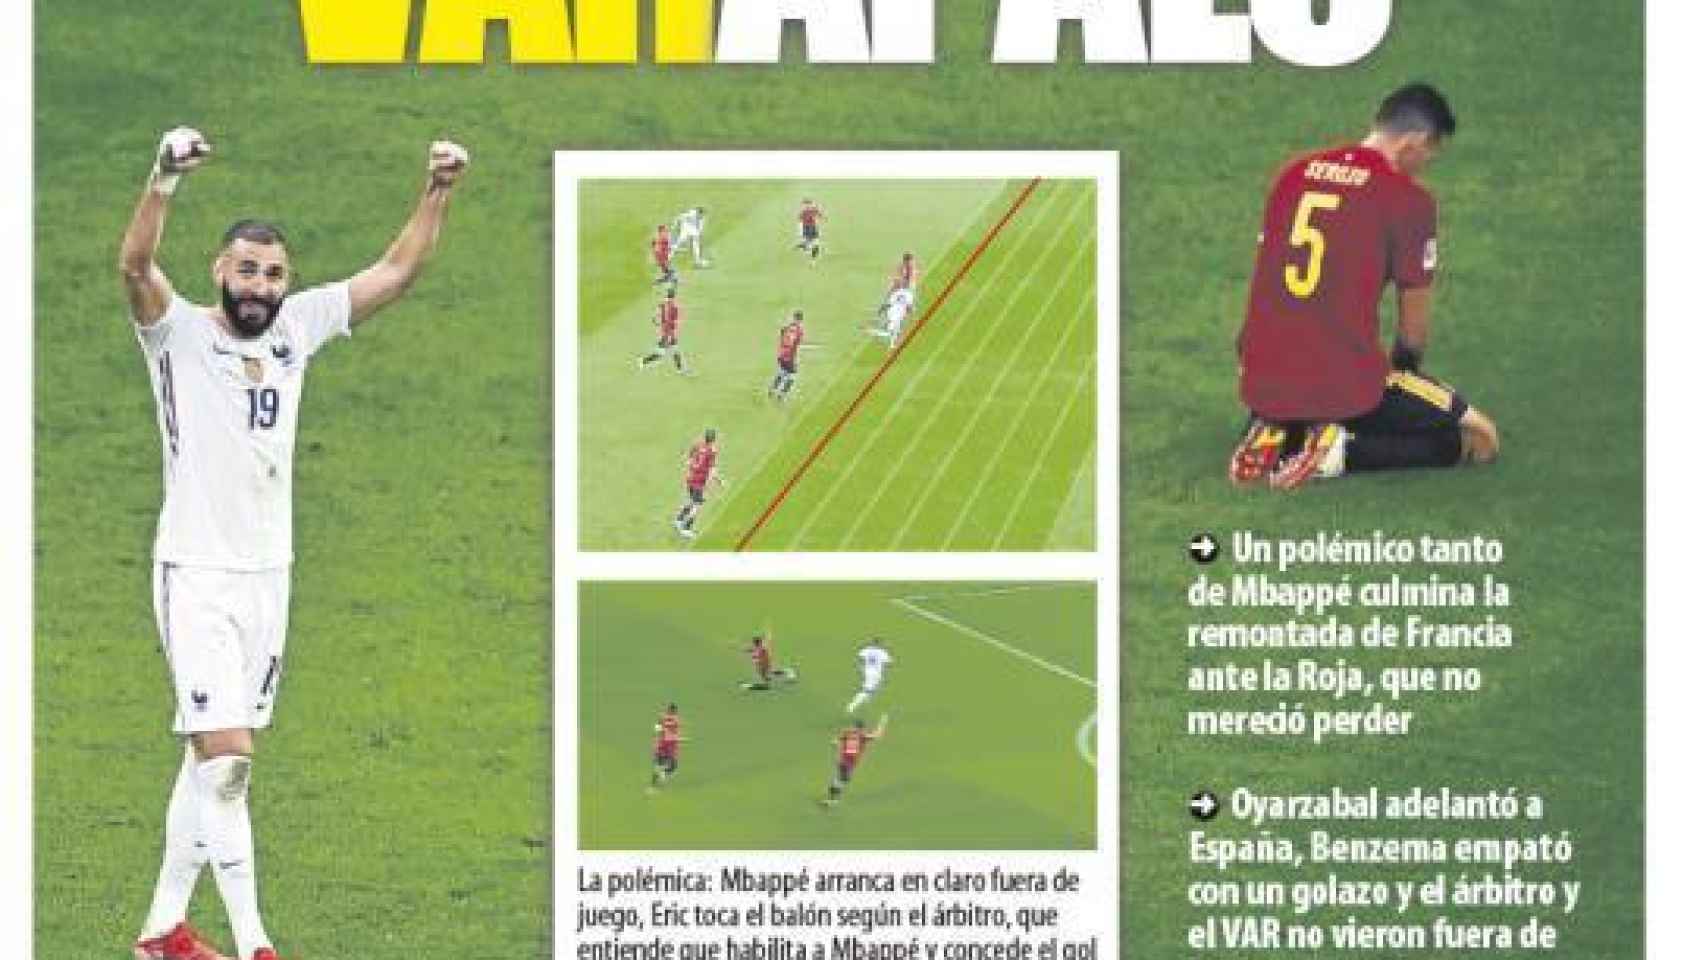 La portada del diario Mundo Deportivo (11/10/2021)